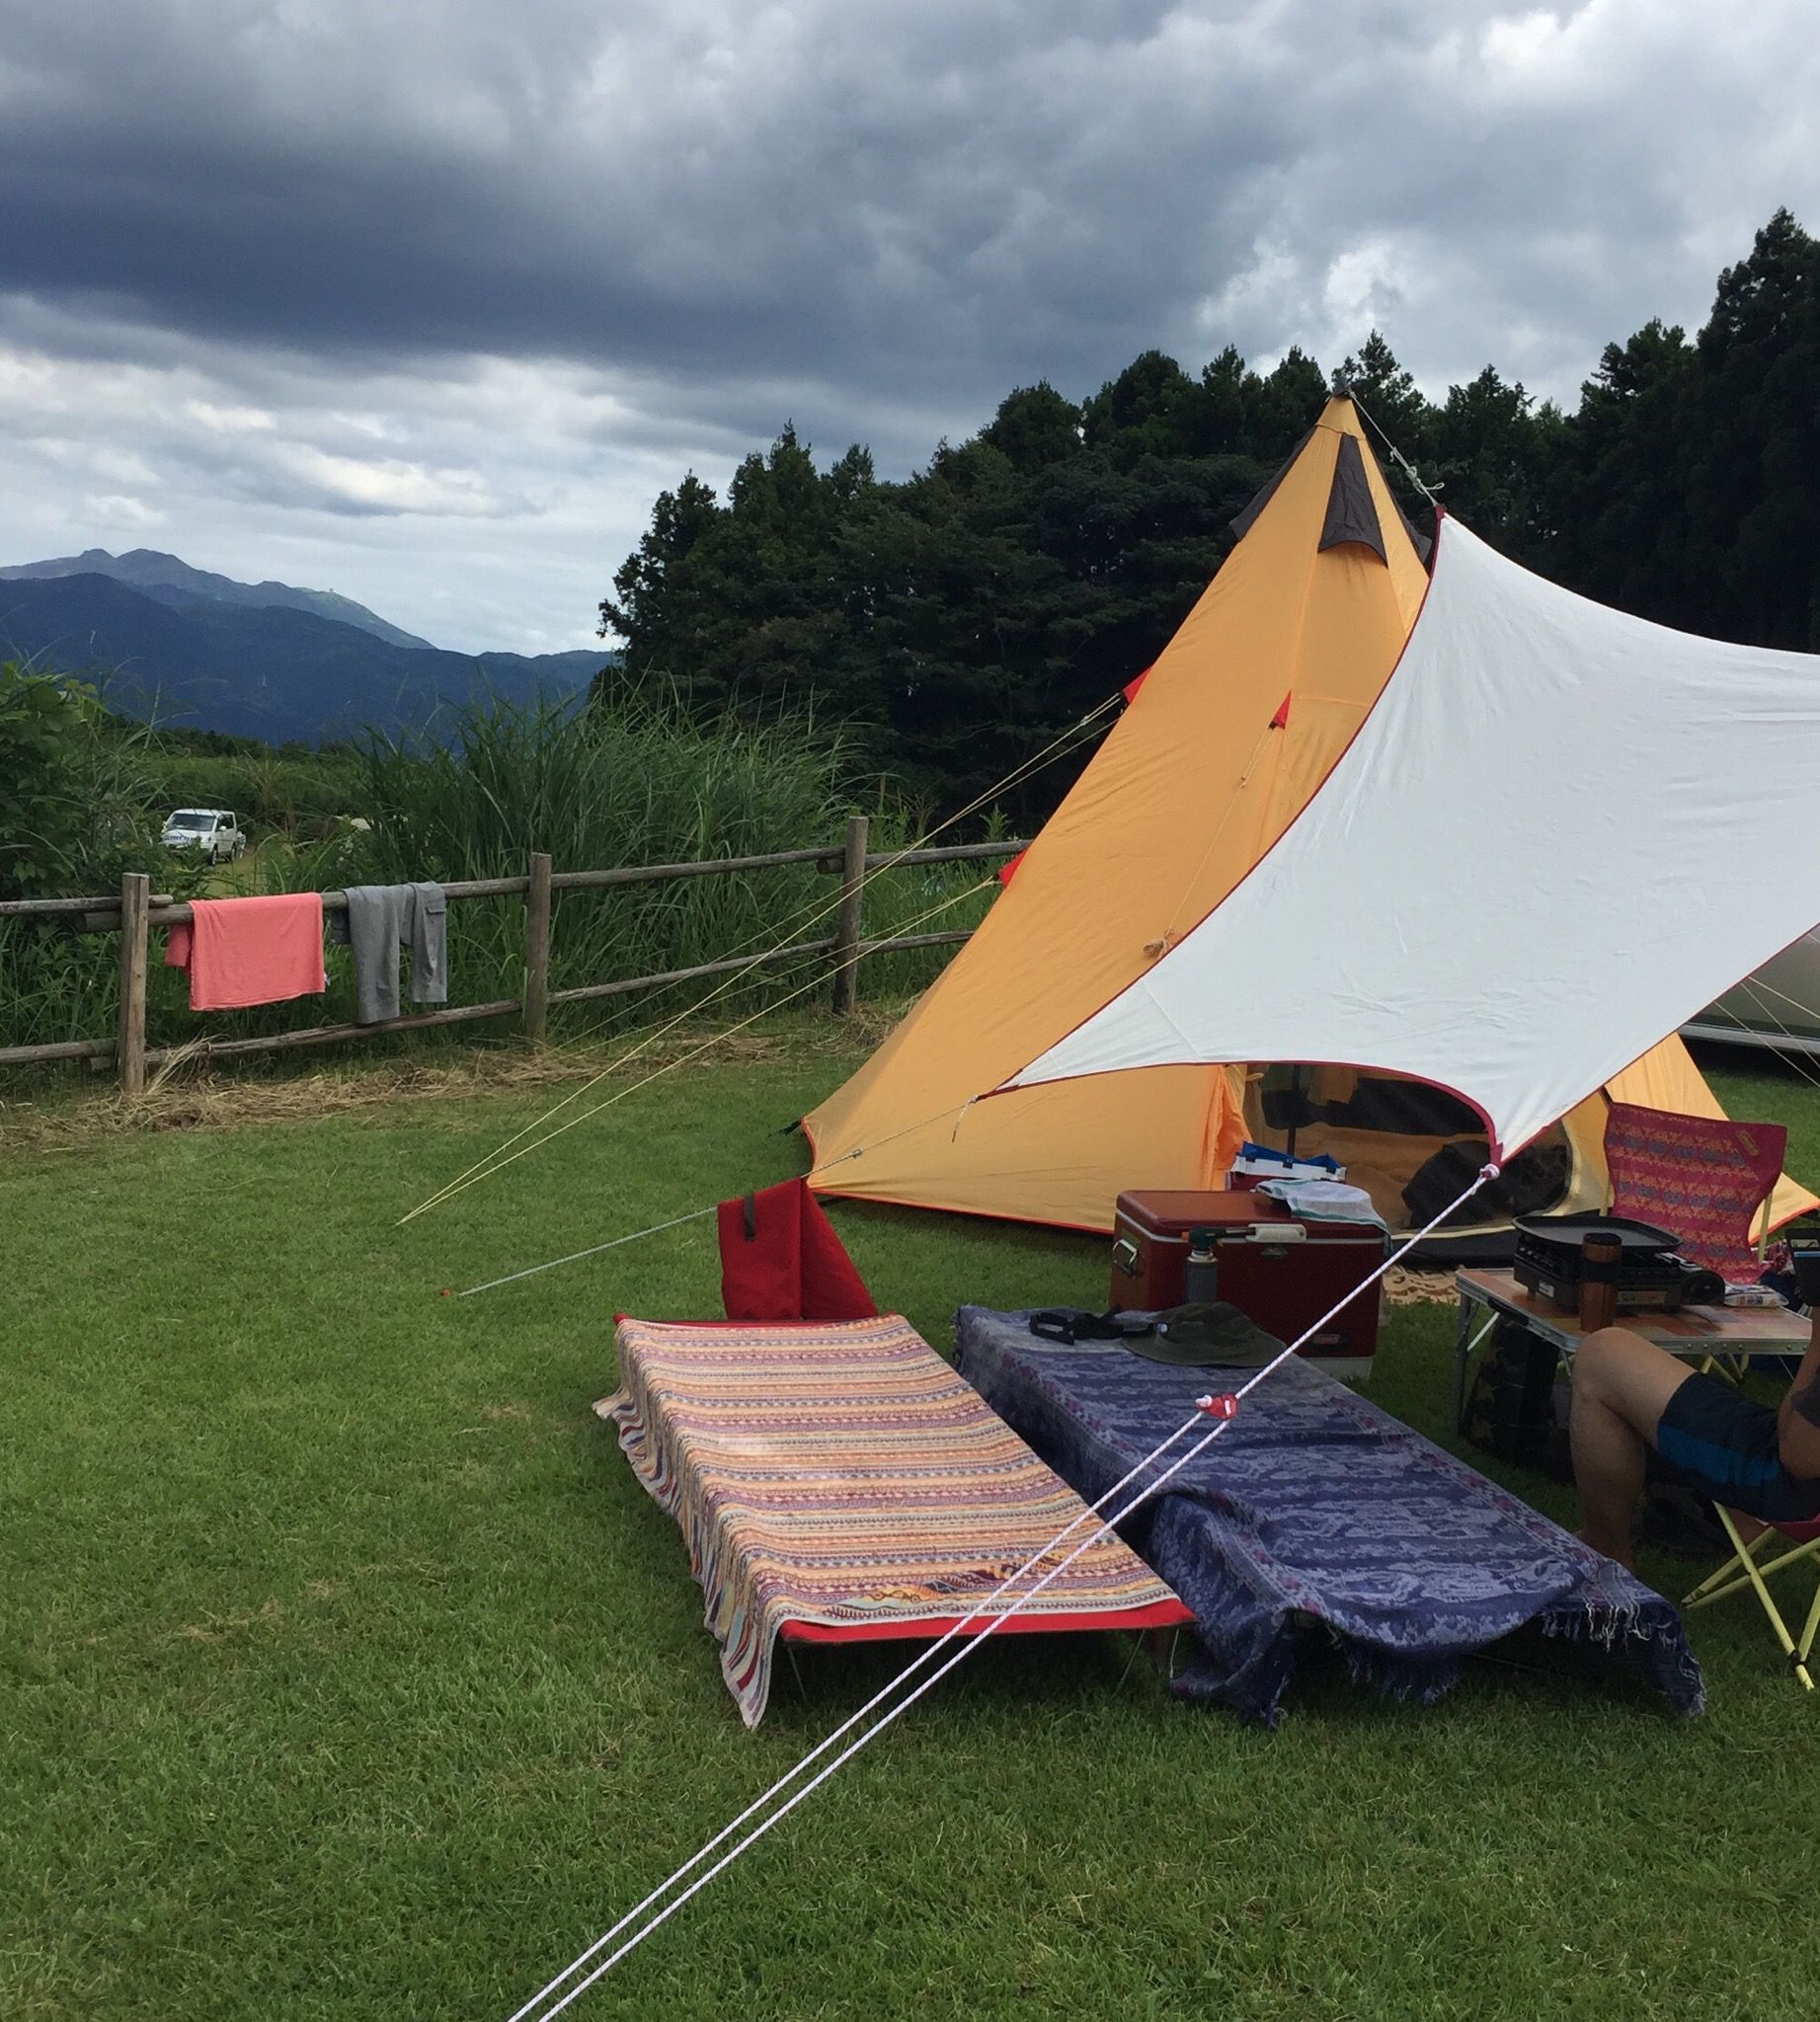 6年ぶりキャンプ 夫婦キャンプ始めました 楽天で購入したキャンプ用具も 食べ盛り男子のお弁当 と 夫婦キャンプ 楽天ブログ